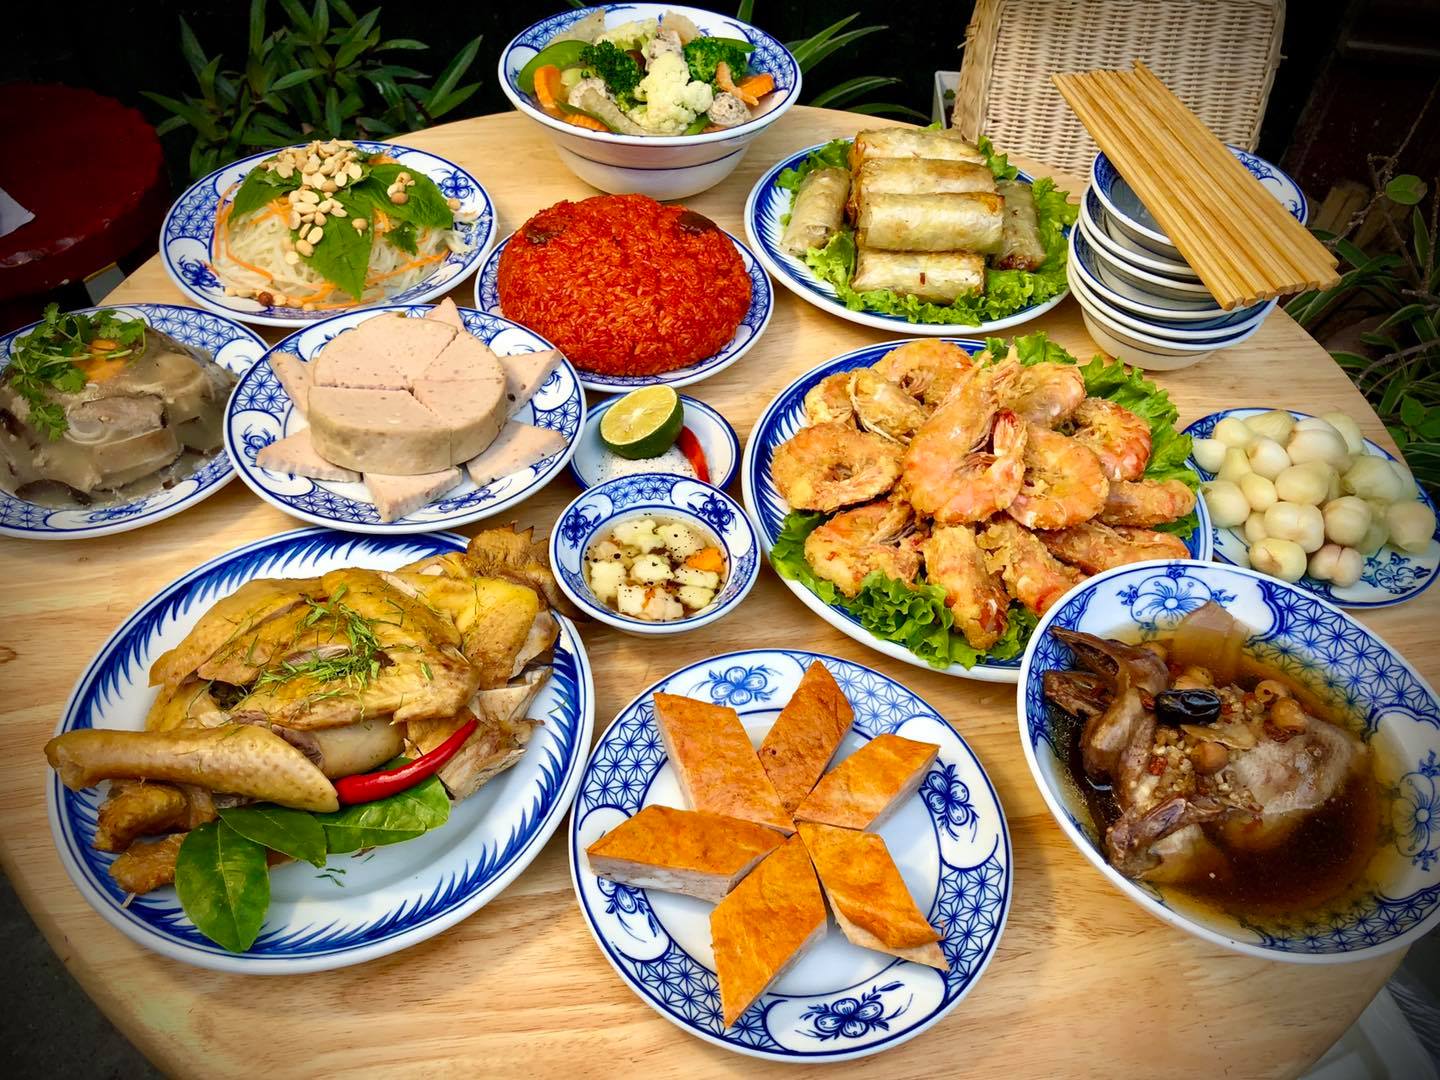 Đặt món ăn tại nhà tại Hà Nội